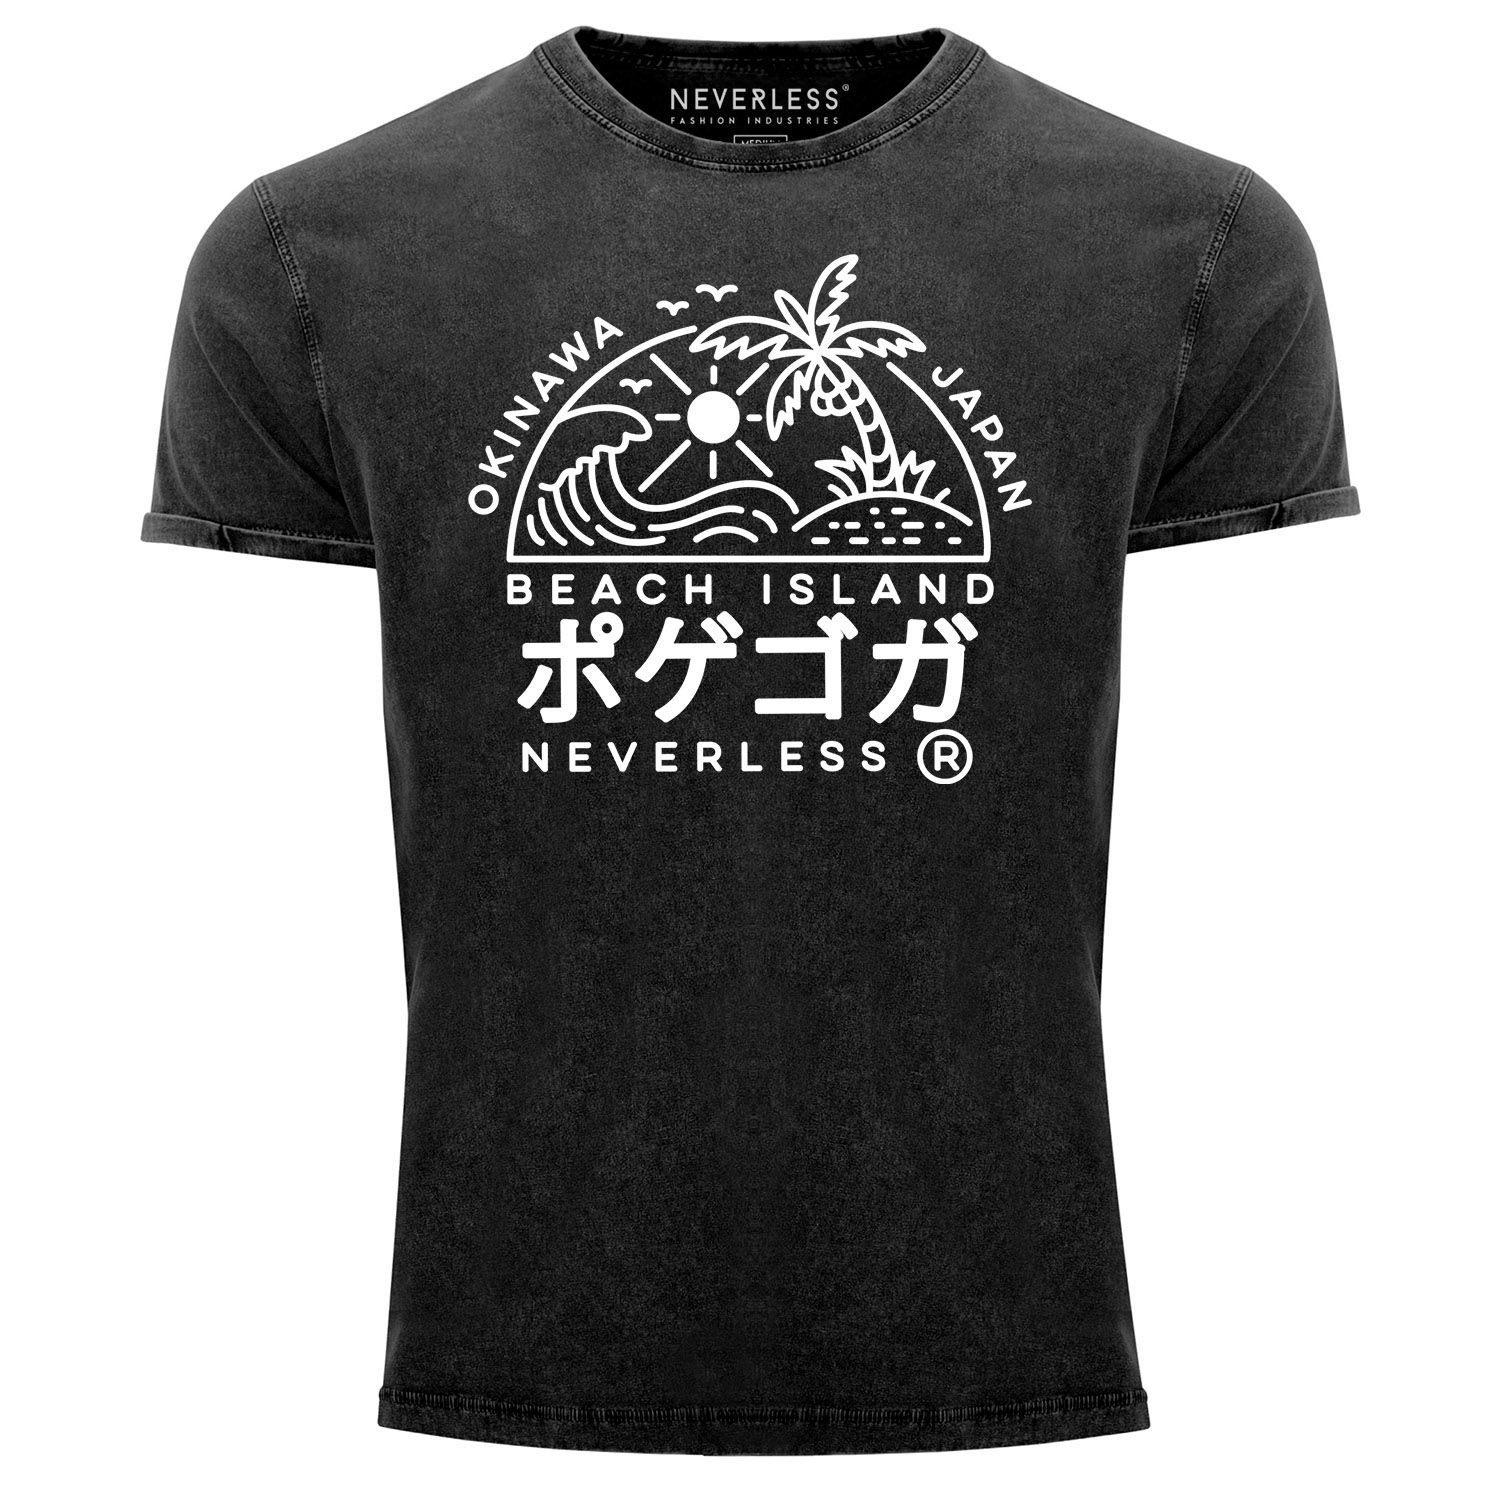 Neverless Print-Shirt Herren Vintage Shirt Japan Okinawa Beach Island Schriftzeichen Printshirt T-Shirt Aufdruck Used Look Neverless® mit Print schwarz